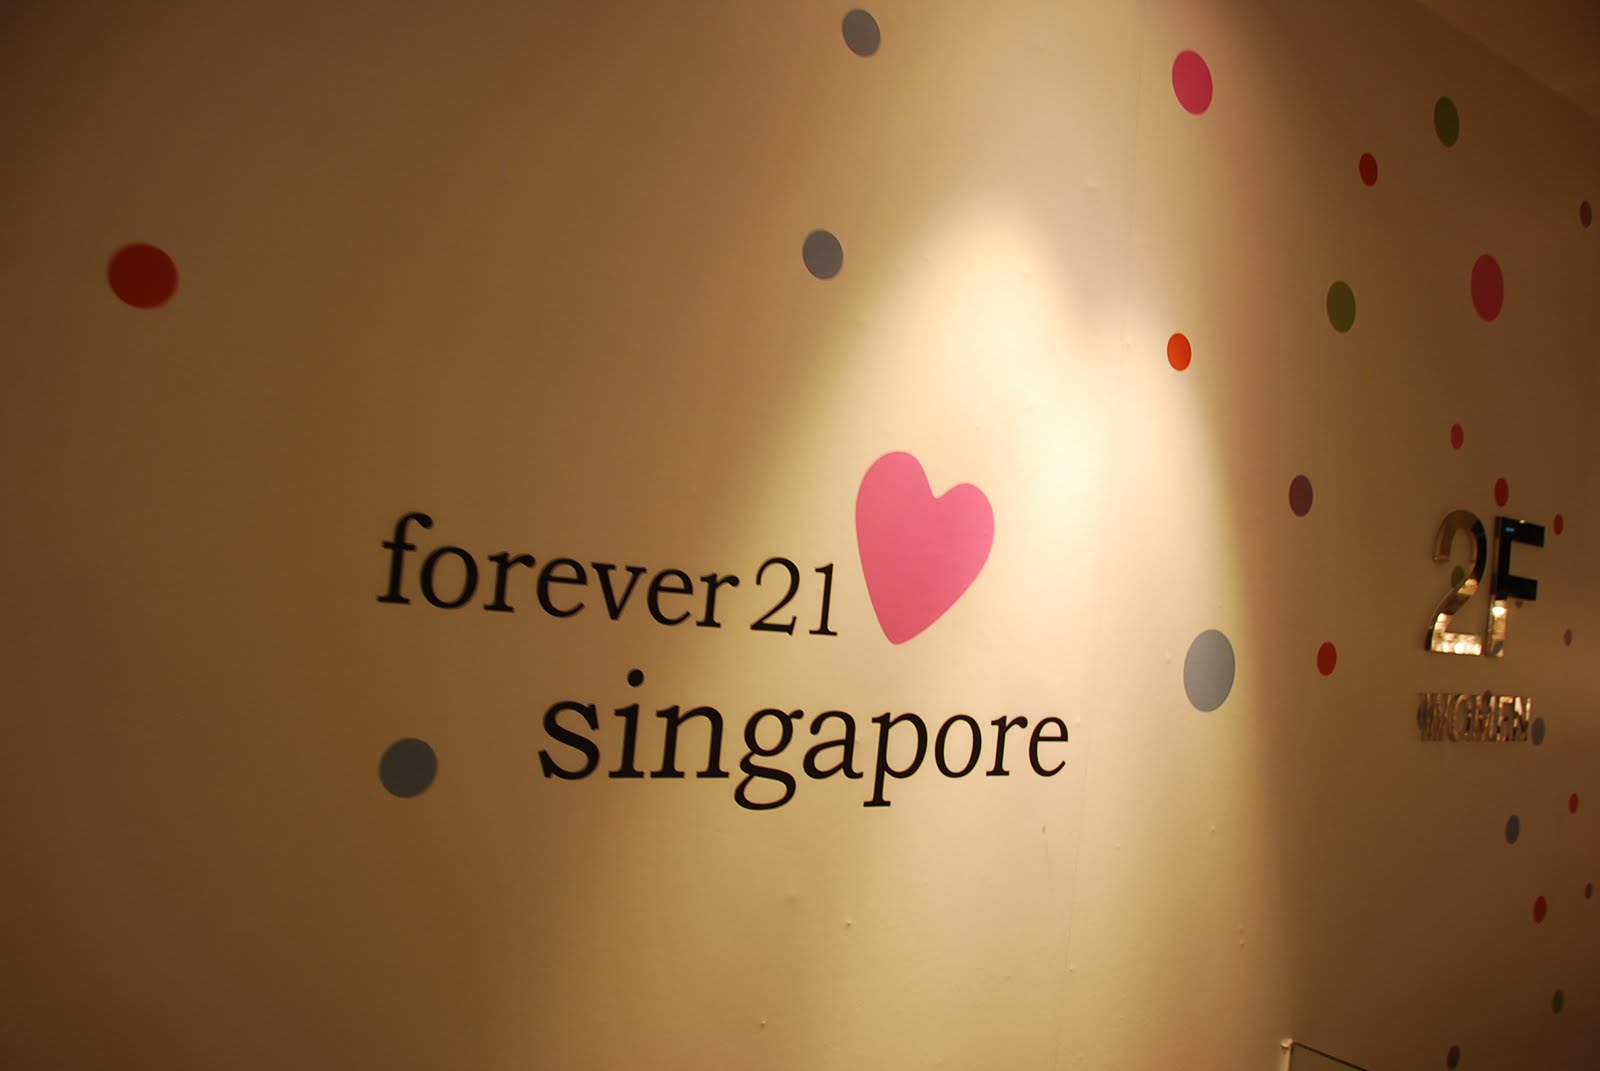 Forever 21 â¥ Singapore